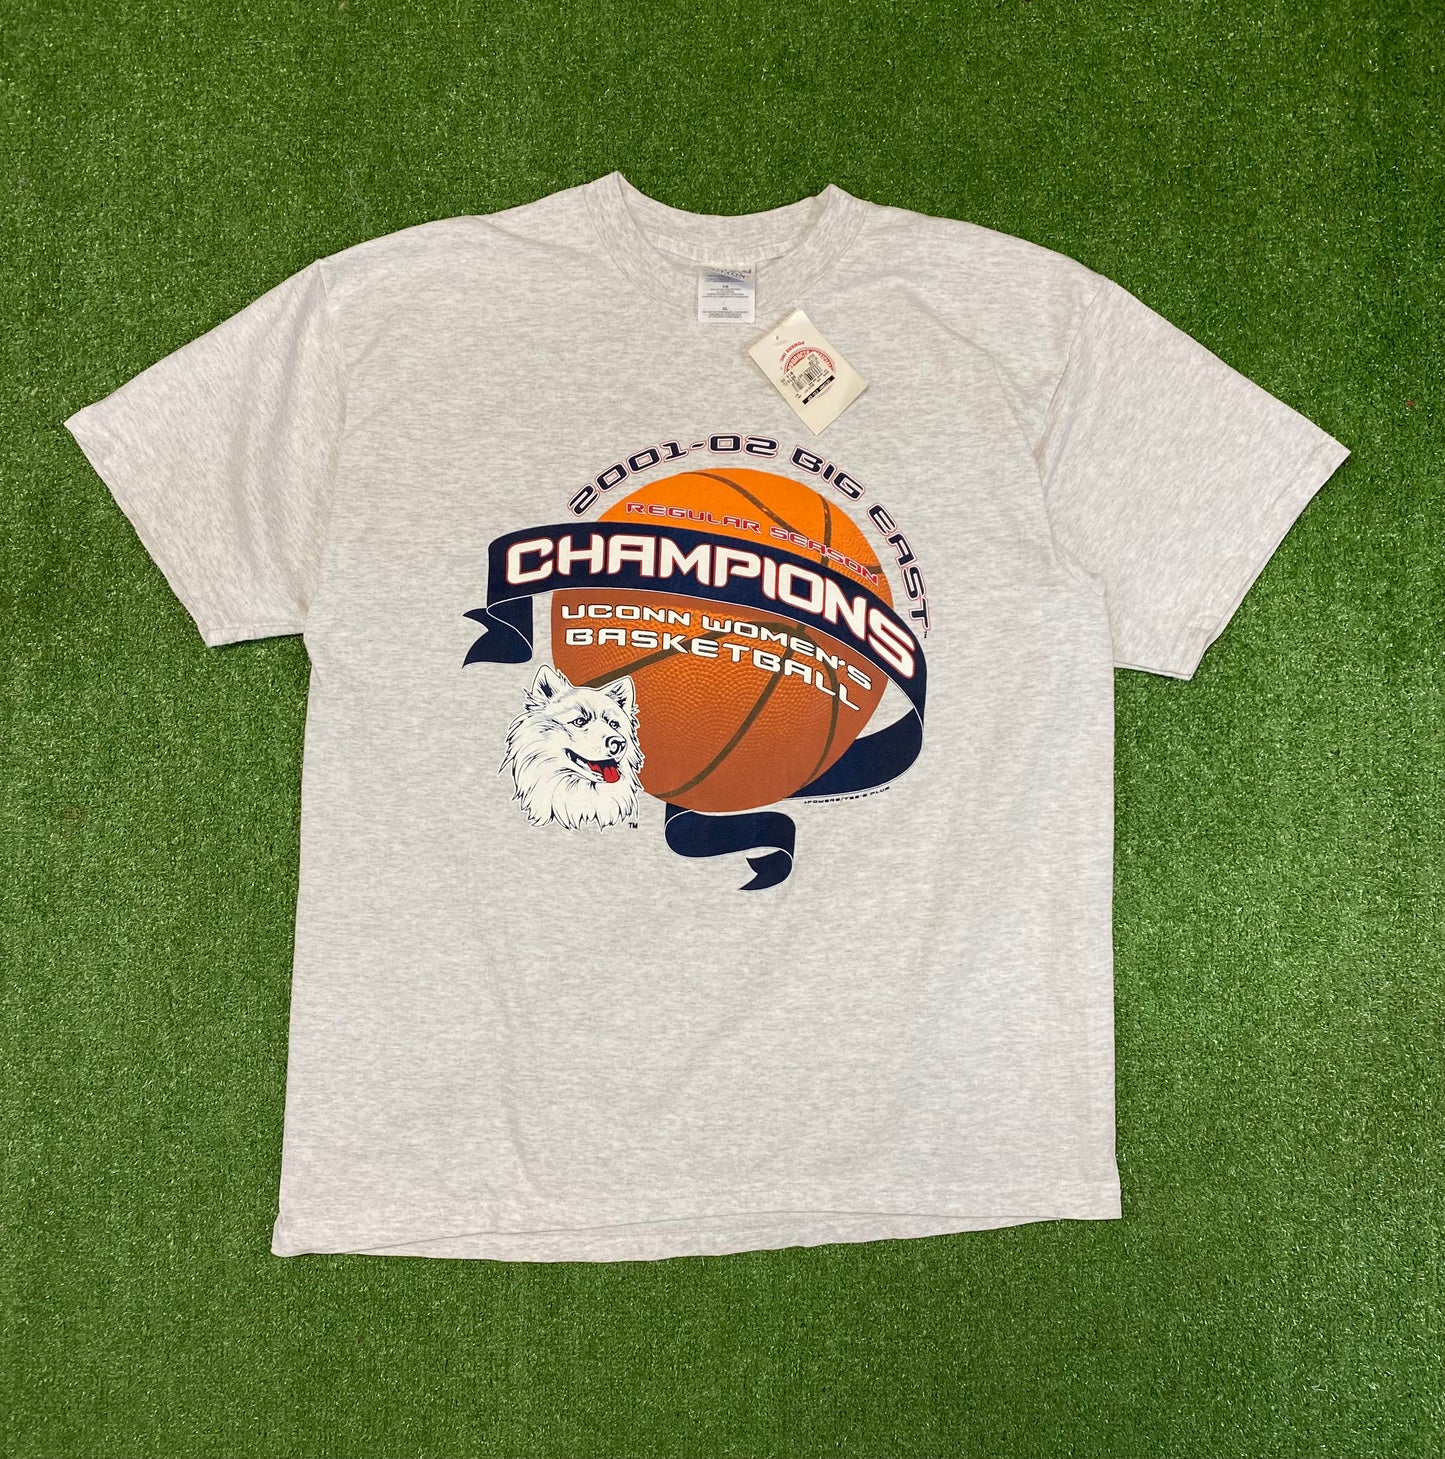 2001-02 UConn Huskies Women’s Basketball T-Shirt